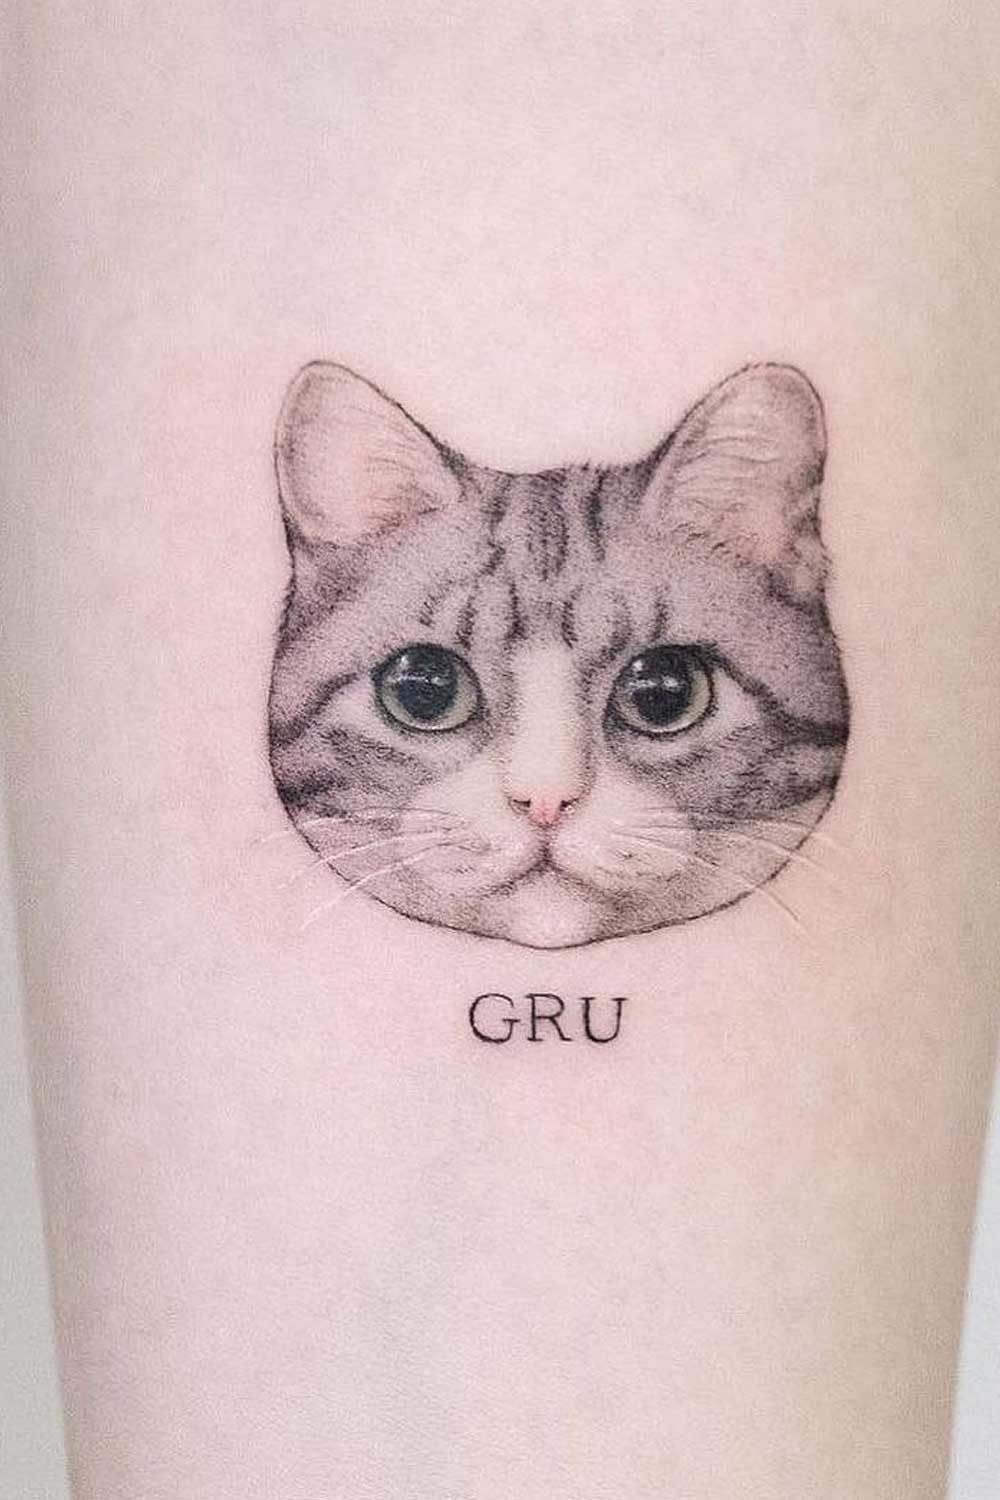 Black and White Cat Tattoo